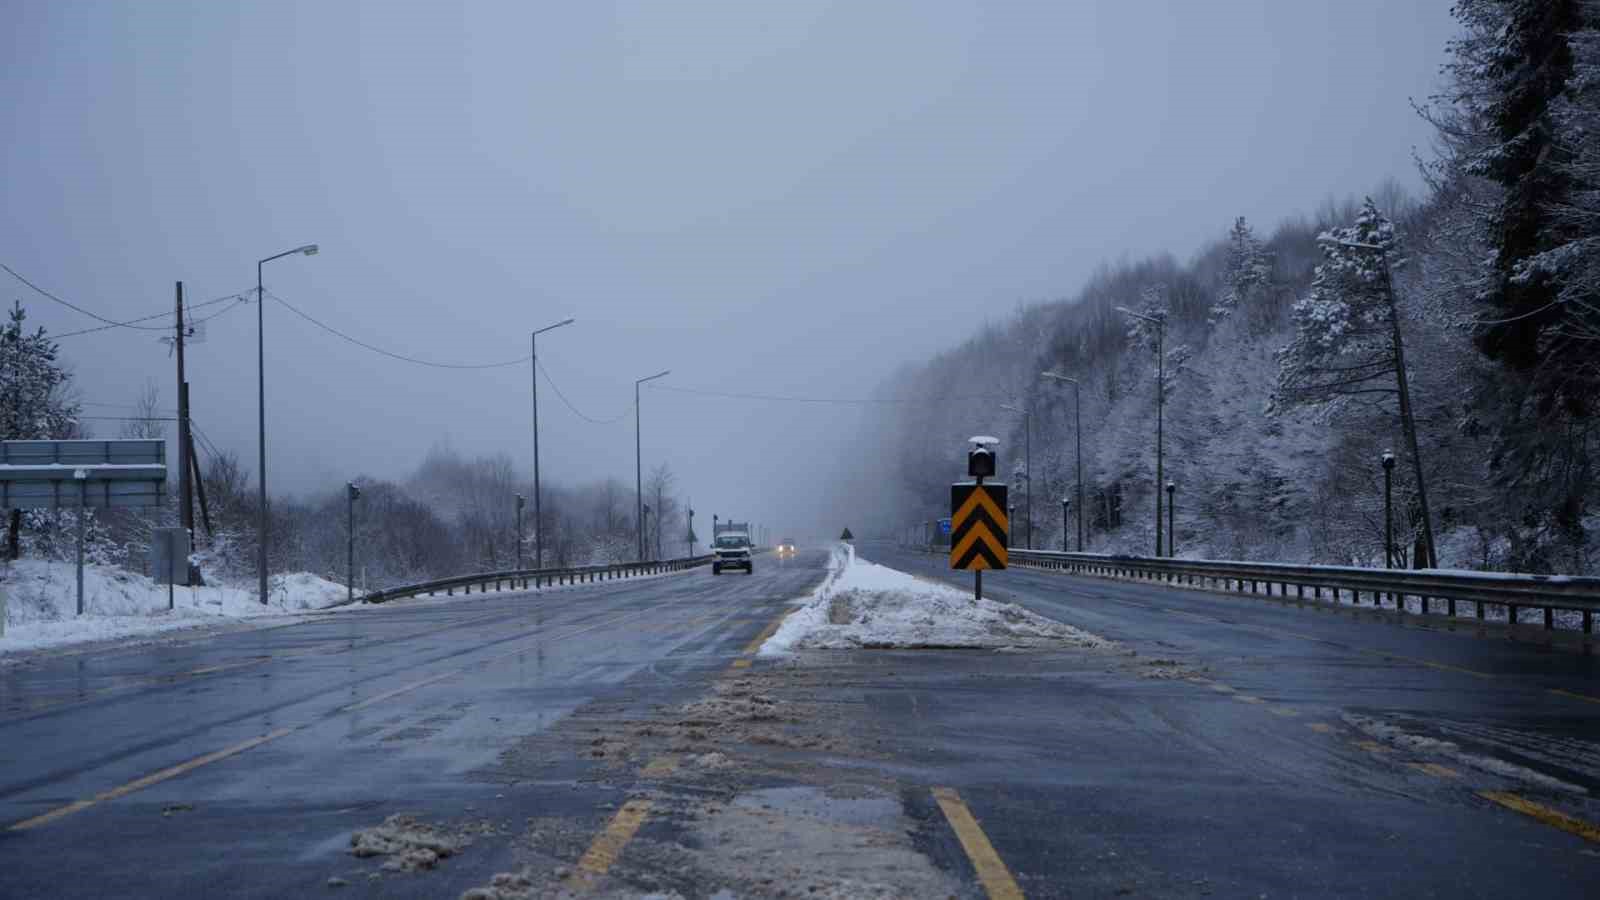 Bolu Dağı’nda hafif kar yağışı devam ediyor, sürücülere dikkatli olmaları uyarısı yapıldı